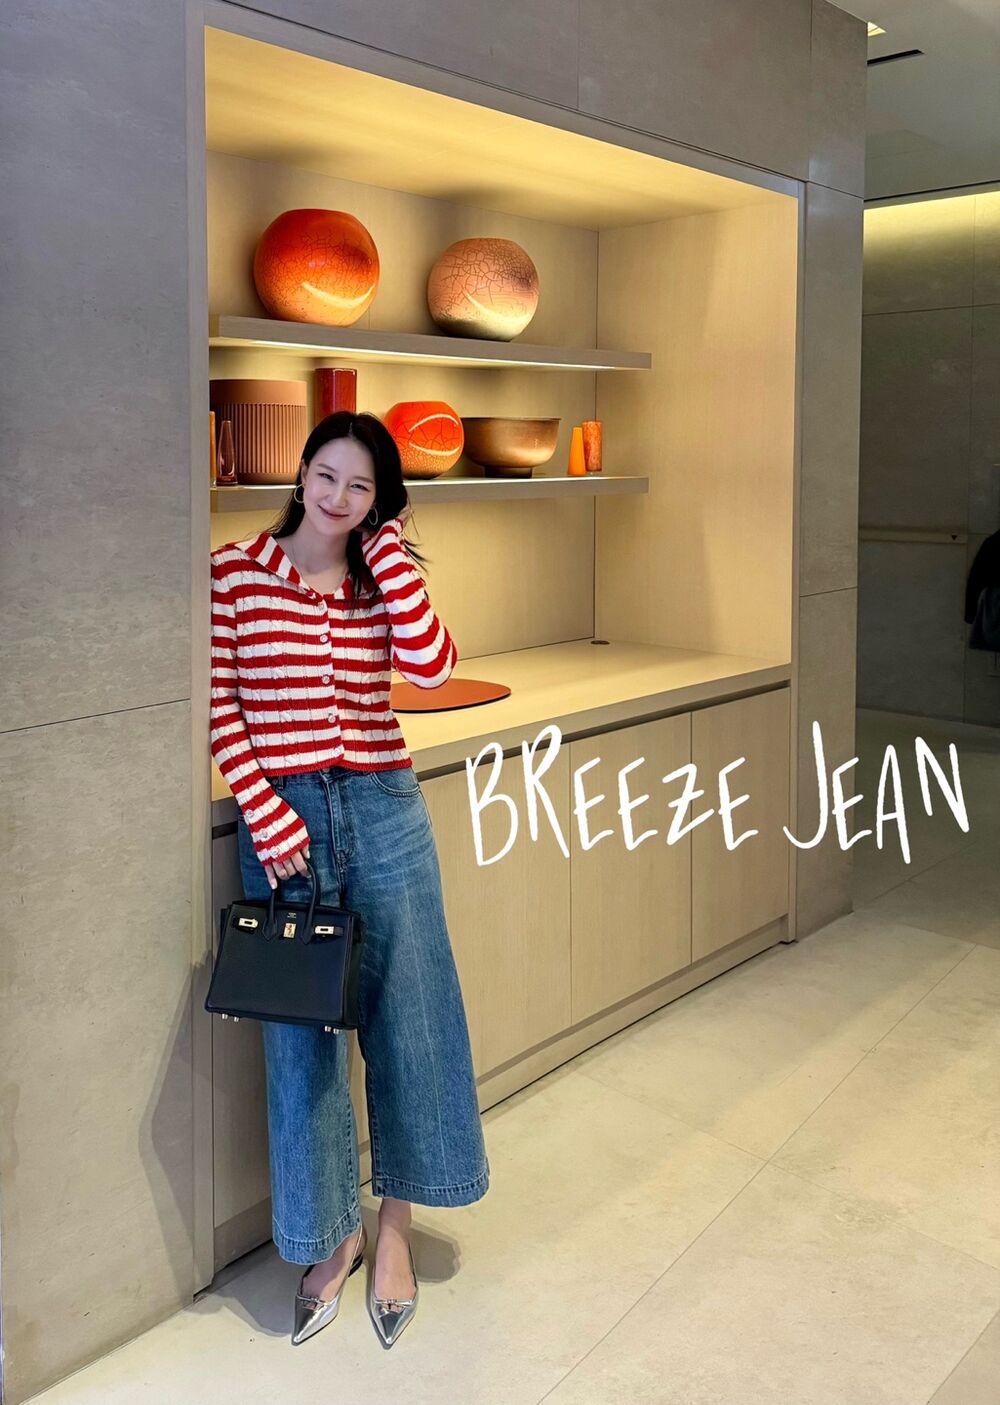 [제작]Breeze jean